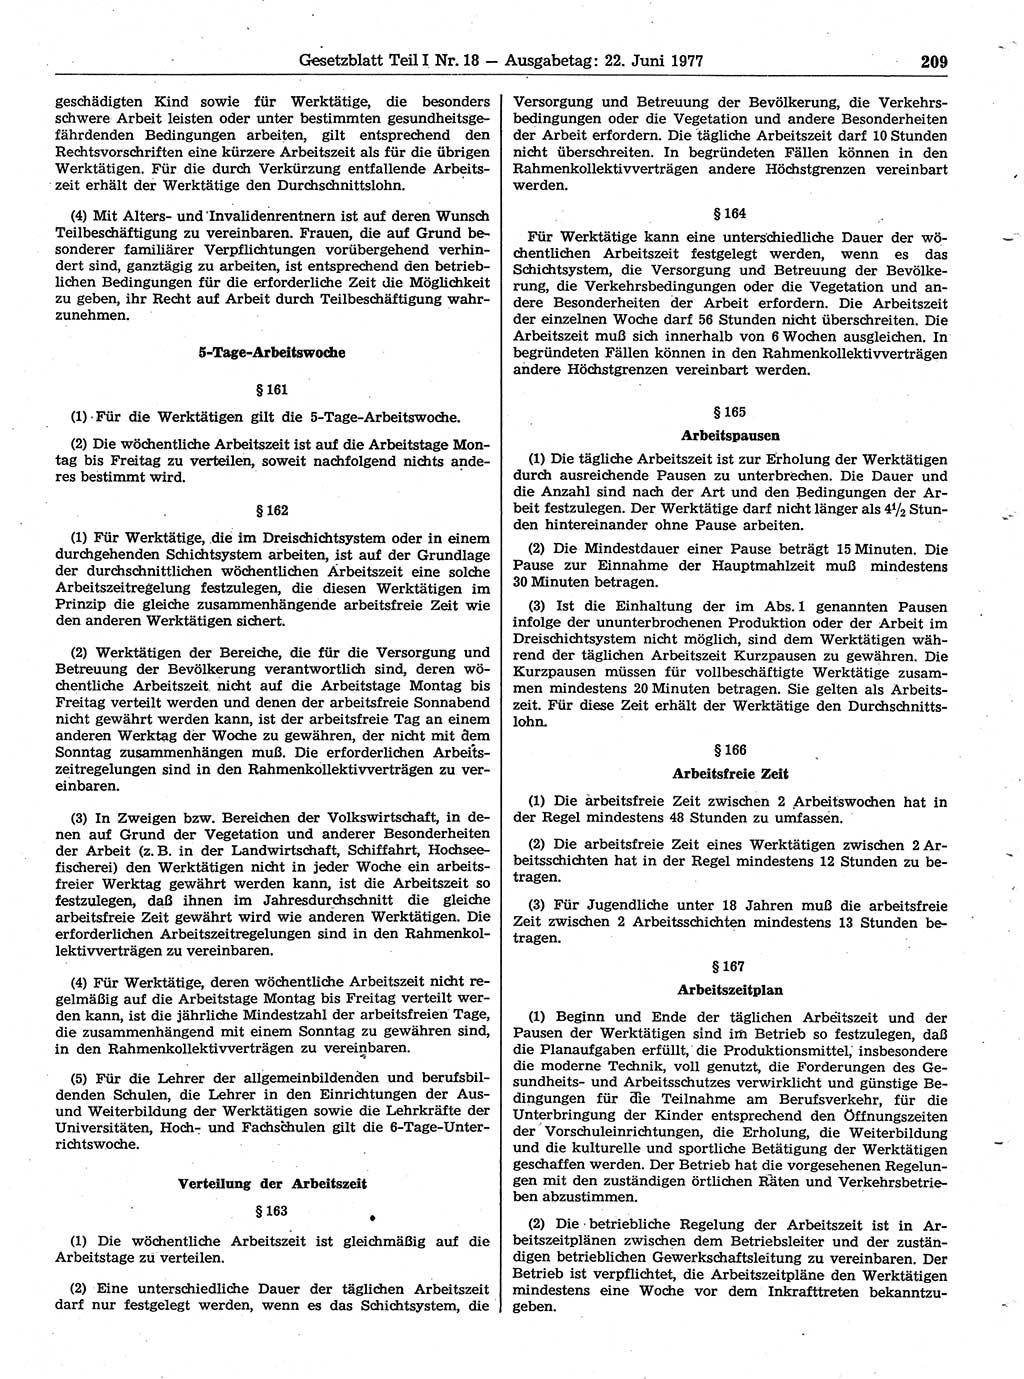 Gesetzblatt (GBl.) der Deutschen Demokratischen Republik (DDR) Teil Ⅰ 1977, Seite 209 (GBl. DDR Ⅰ 1977, S. 209)